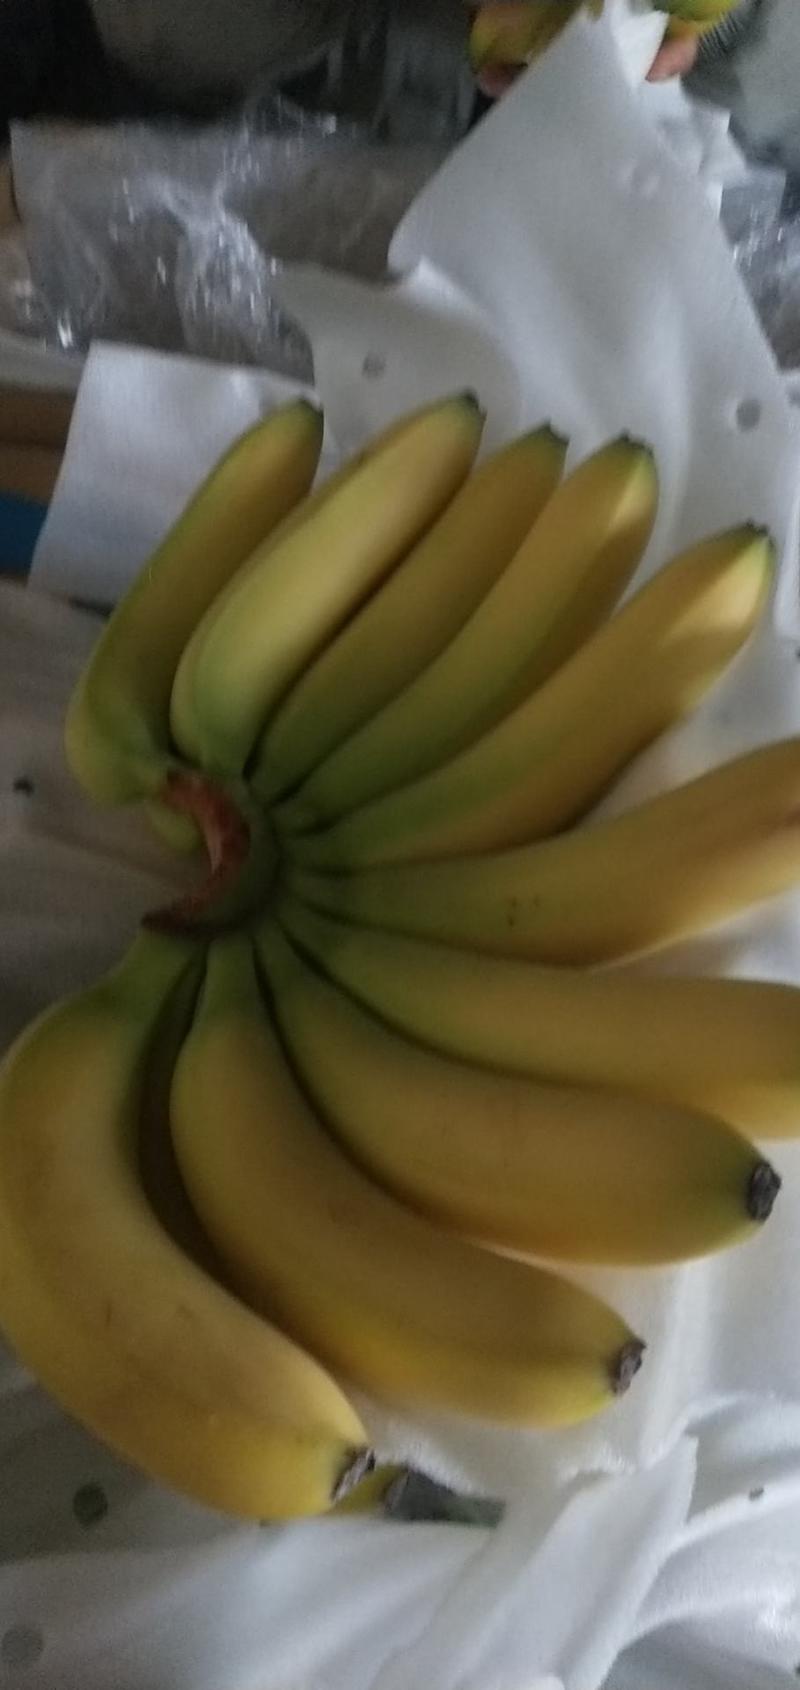 香蕉大量供货